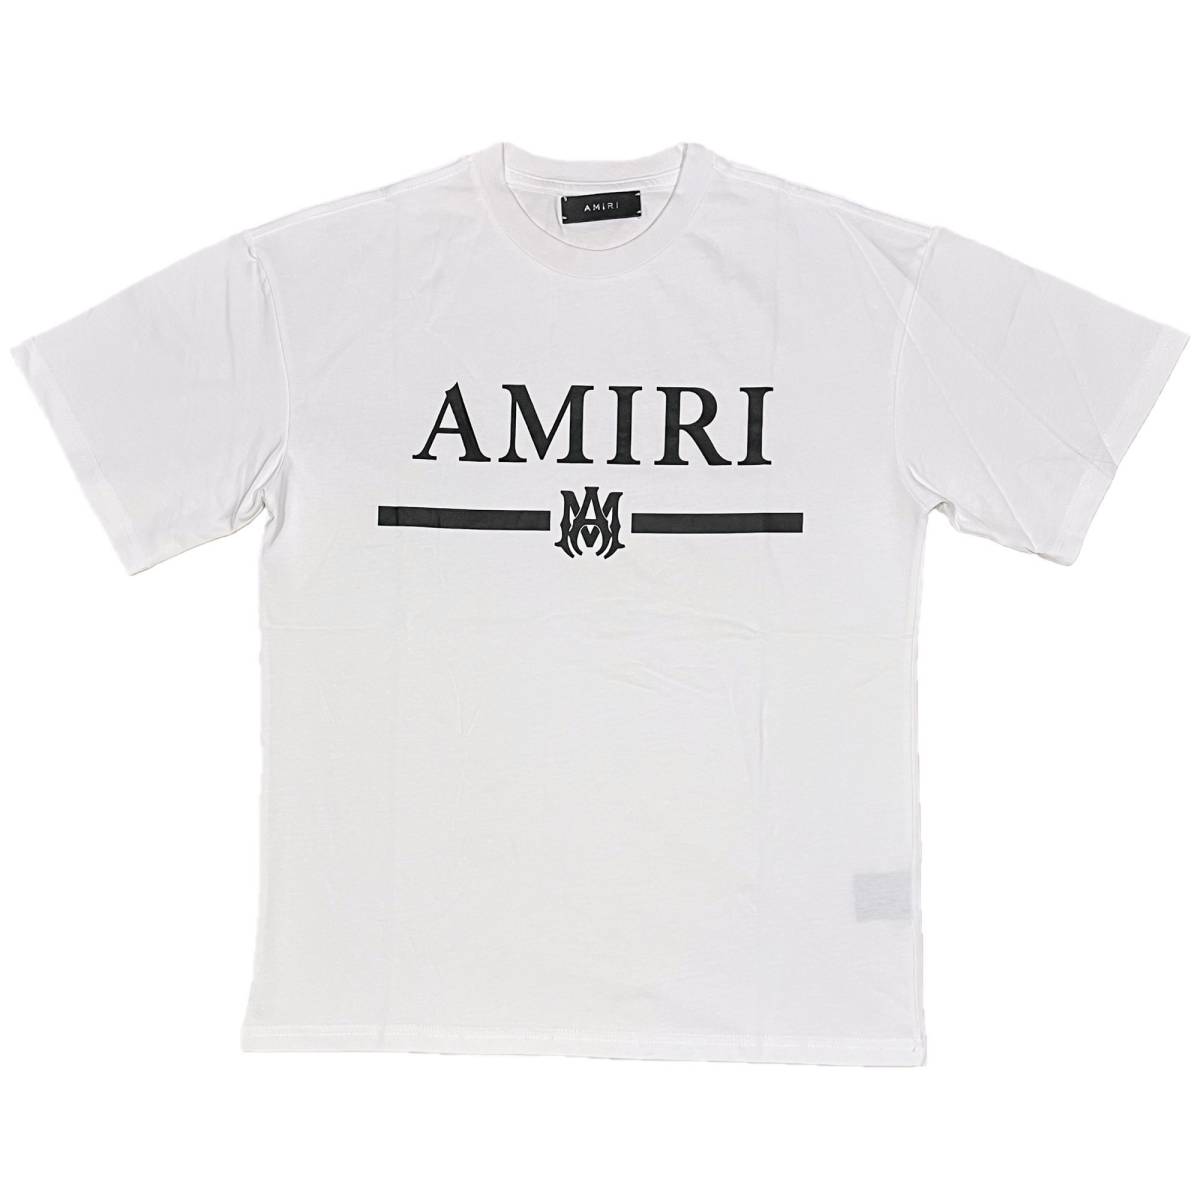 [並行輸入品] AMIRI アミリ M.A. Bar S/S T shirt MAバー 半袖 Tシャツ (ホワイト) (XL)